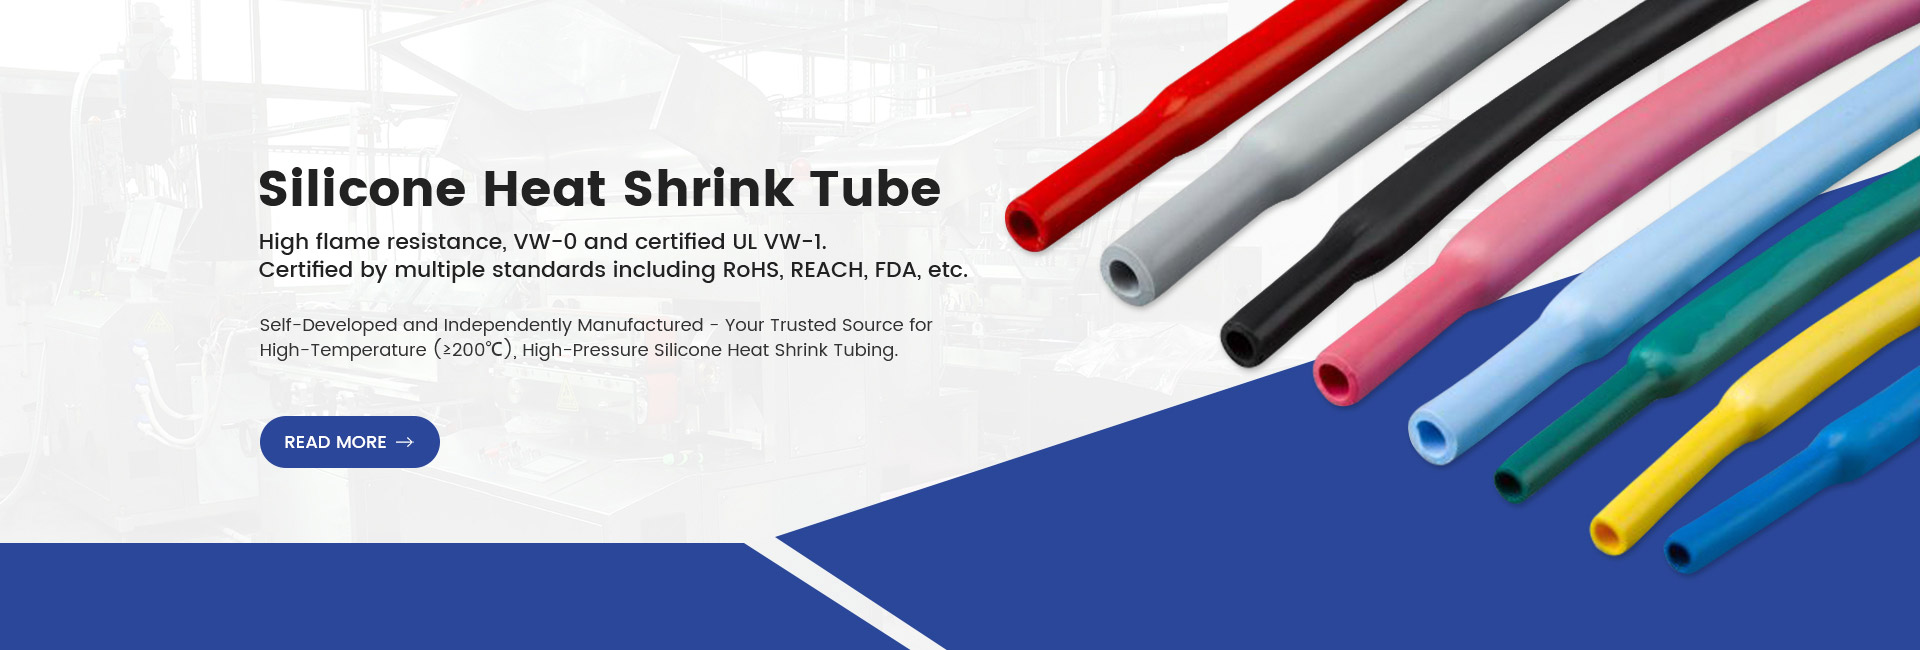 Silicone Heat Shrink Tube